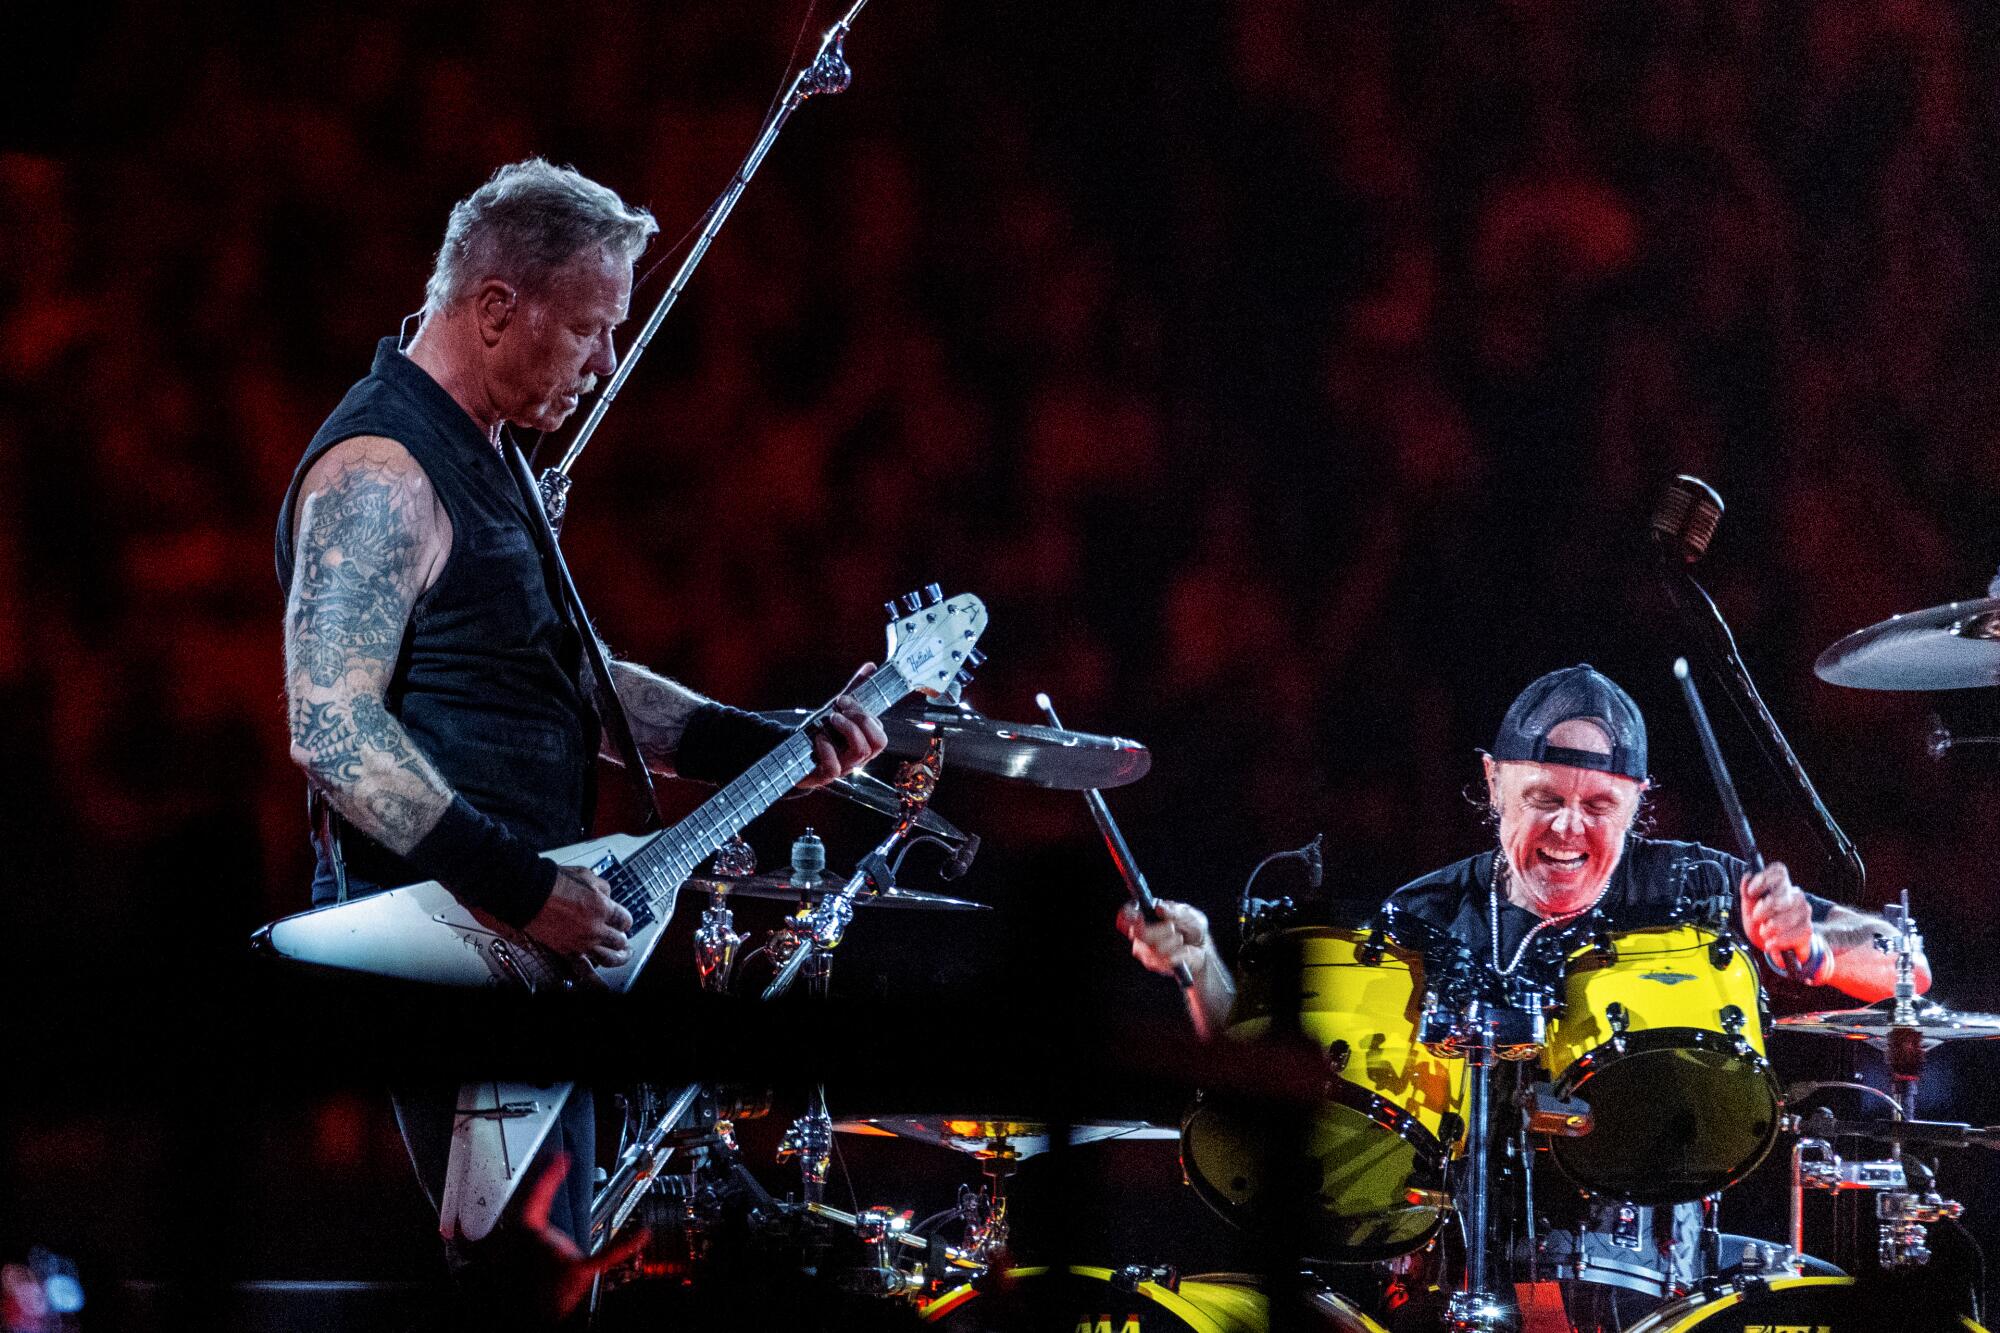 El fin de semana fue de Metallica y sus amigos - Los Angeles Times